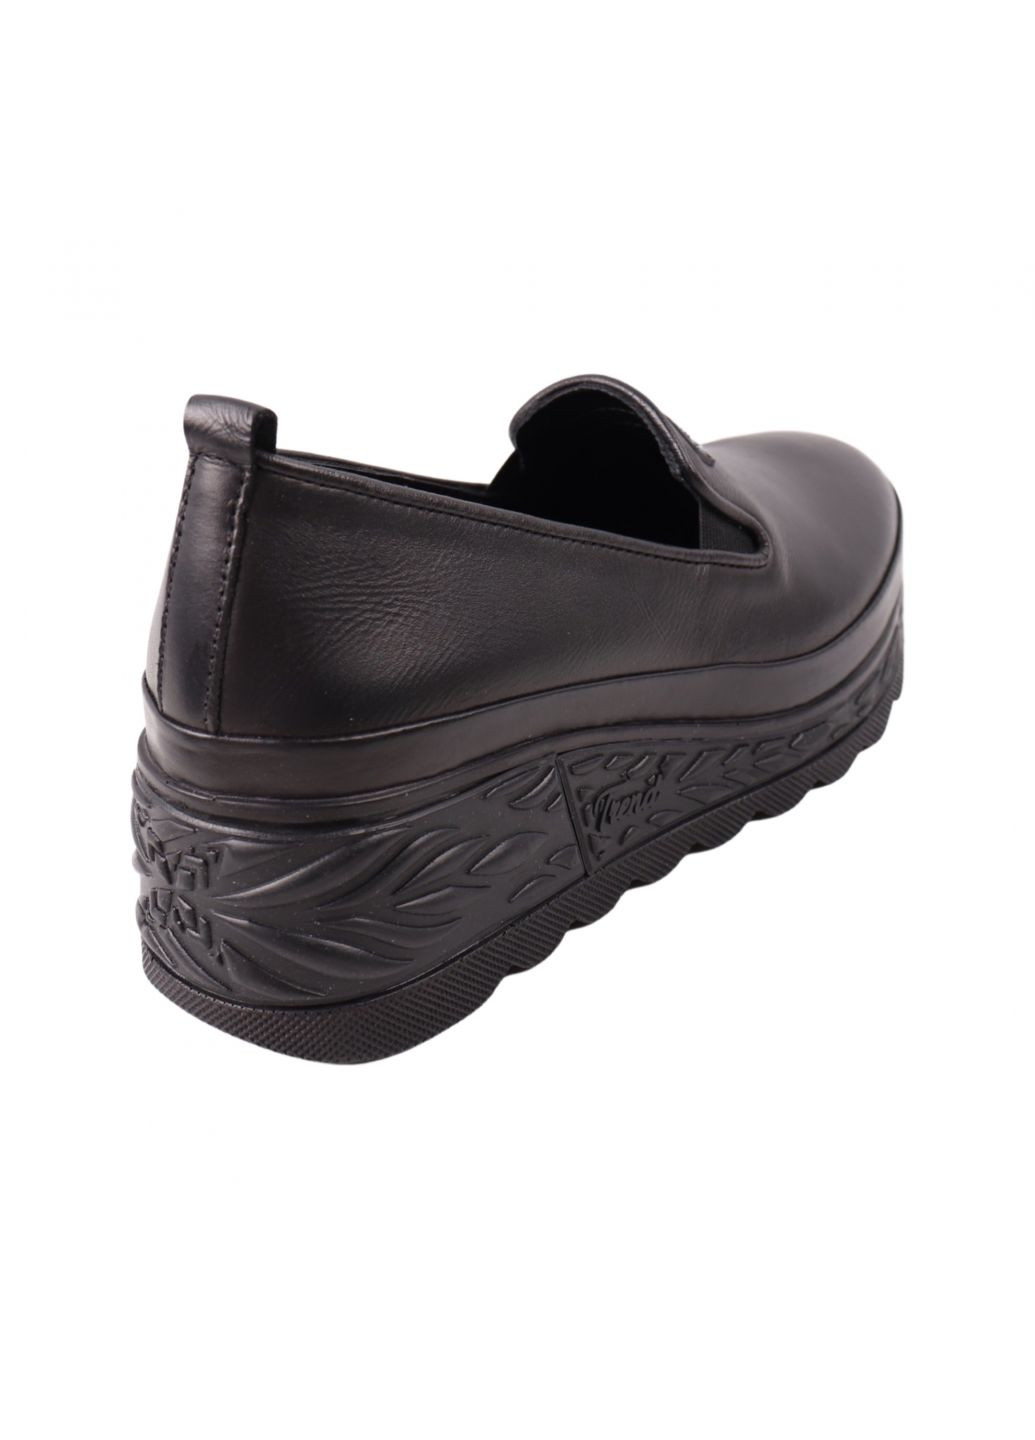 Туфлі жіночі чорні натуральна шкіра Phany 345-23dtc (261995045)